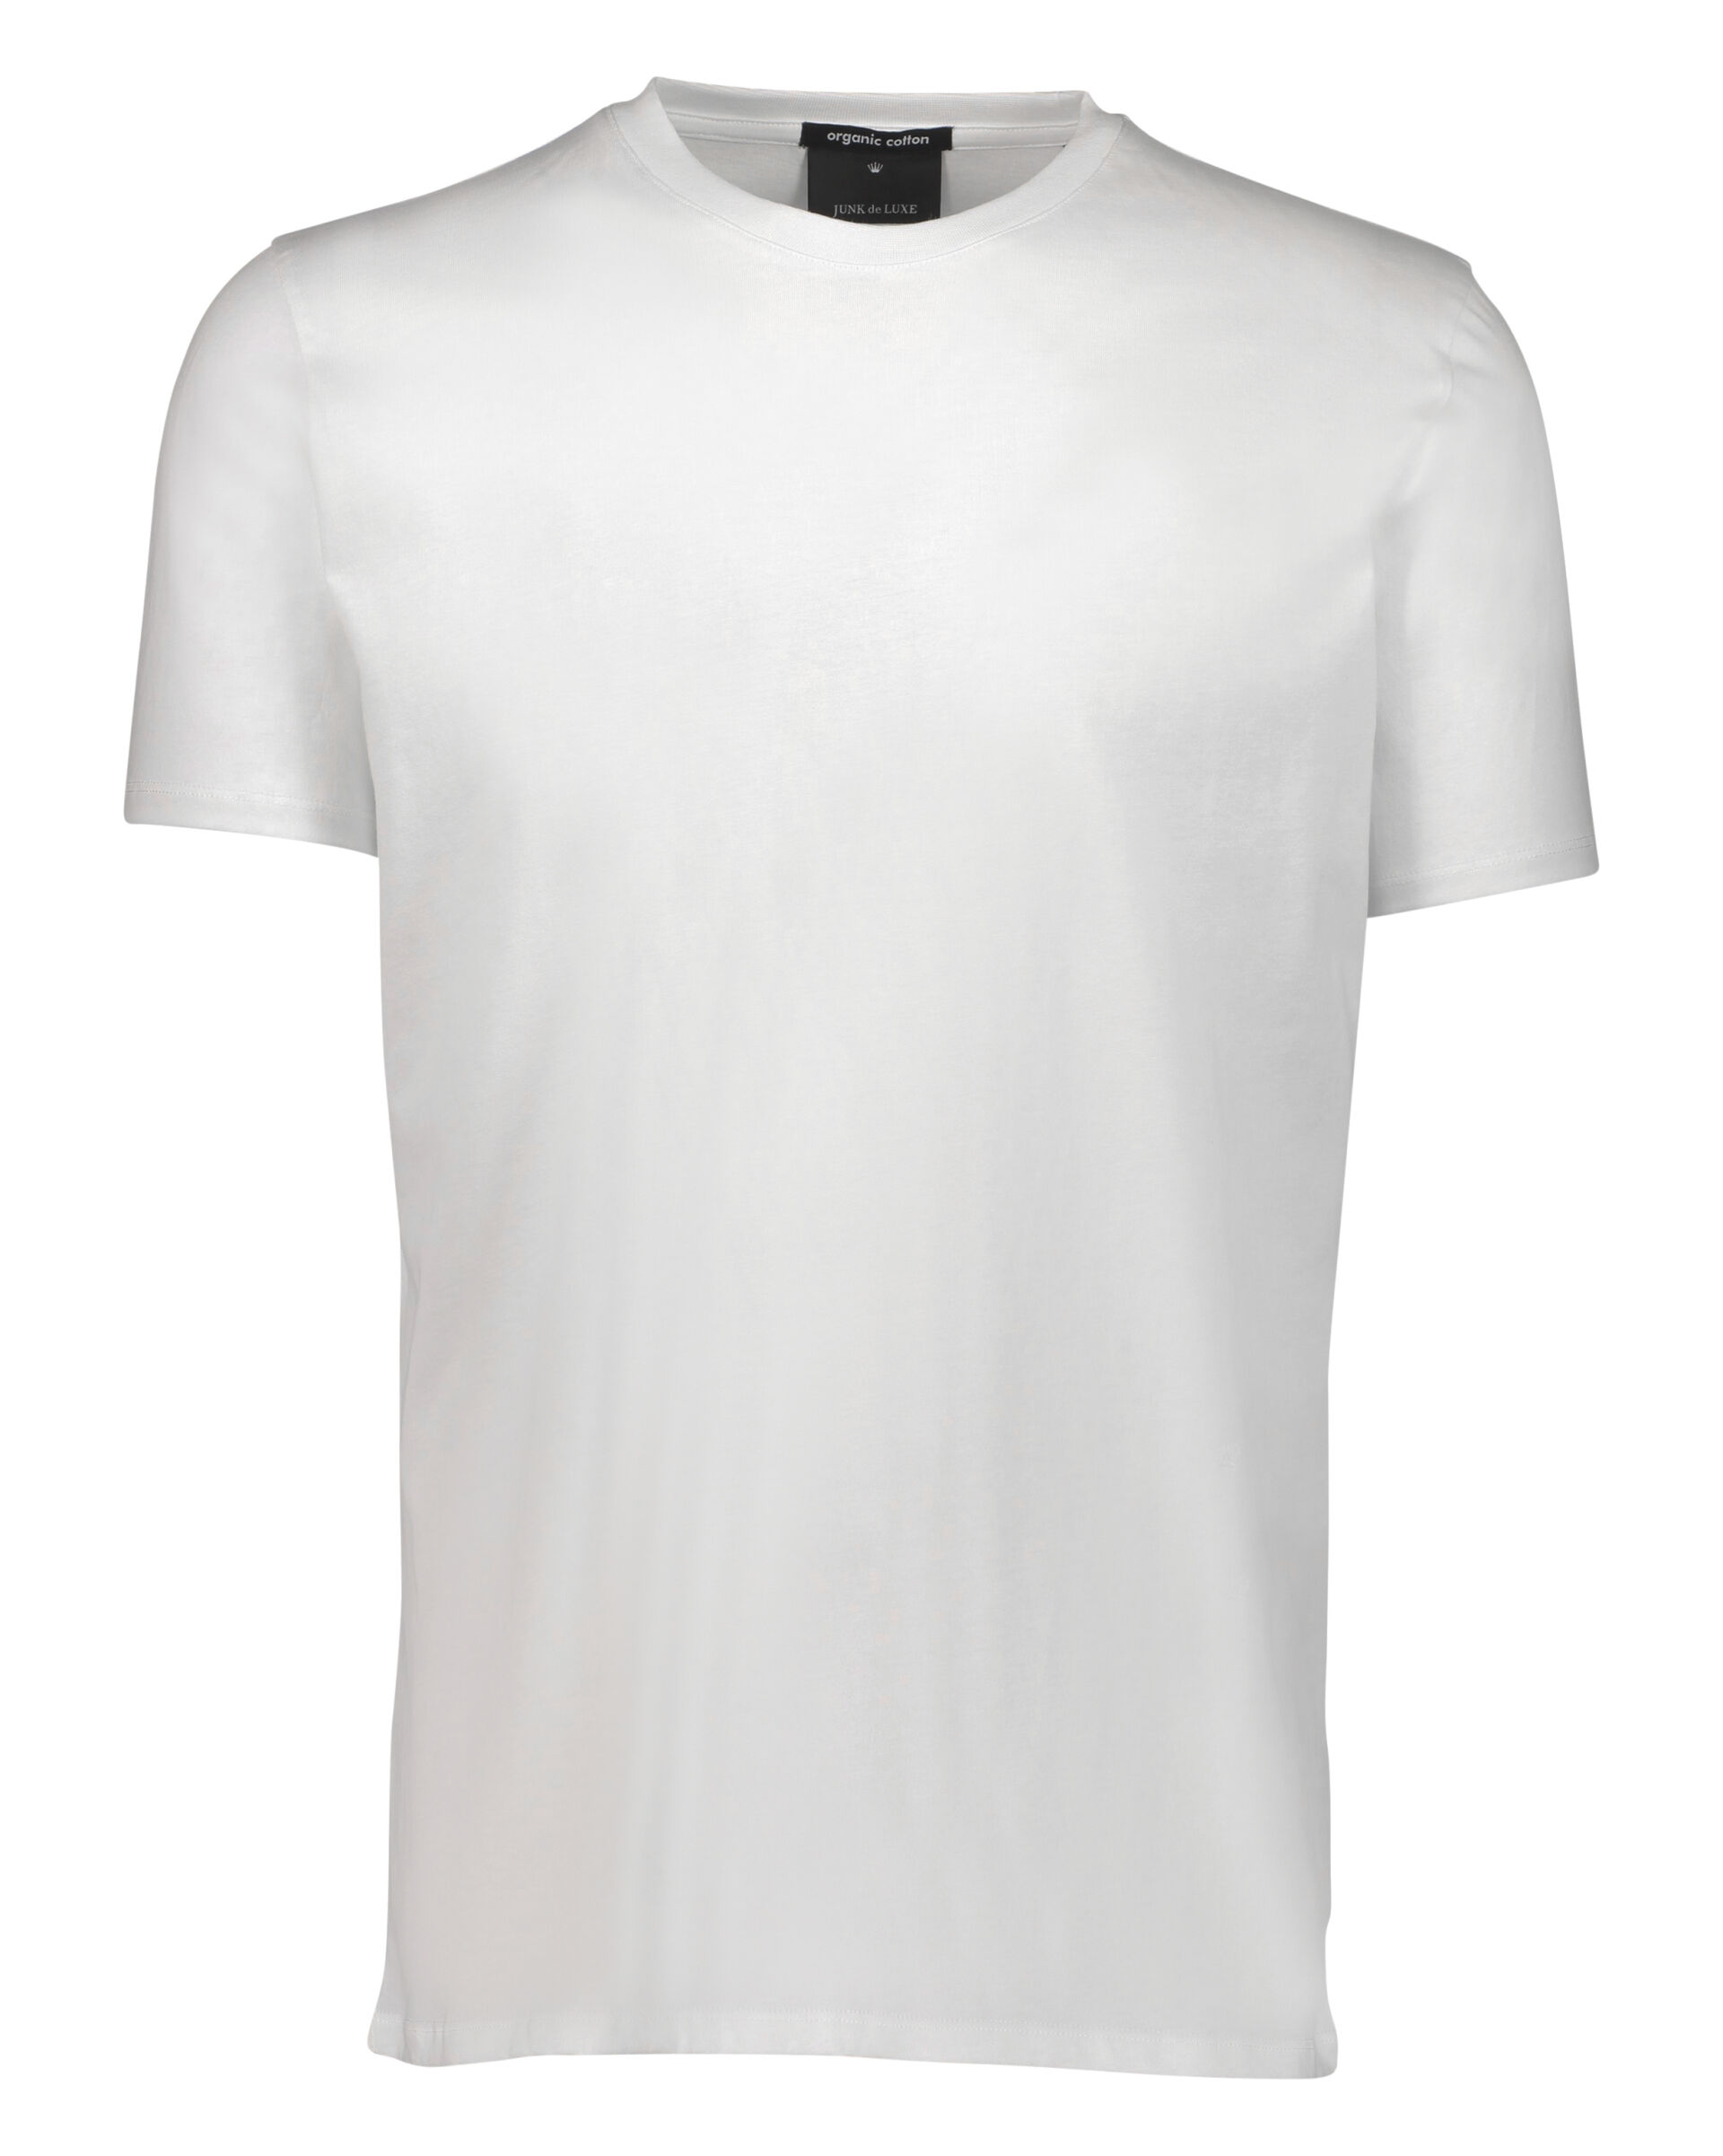 Junk de Luxe  T-shirt 60-40005